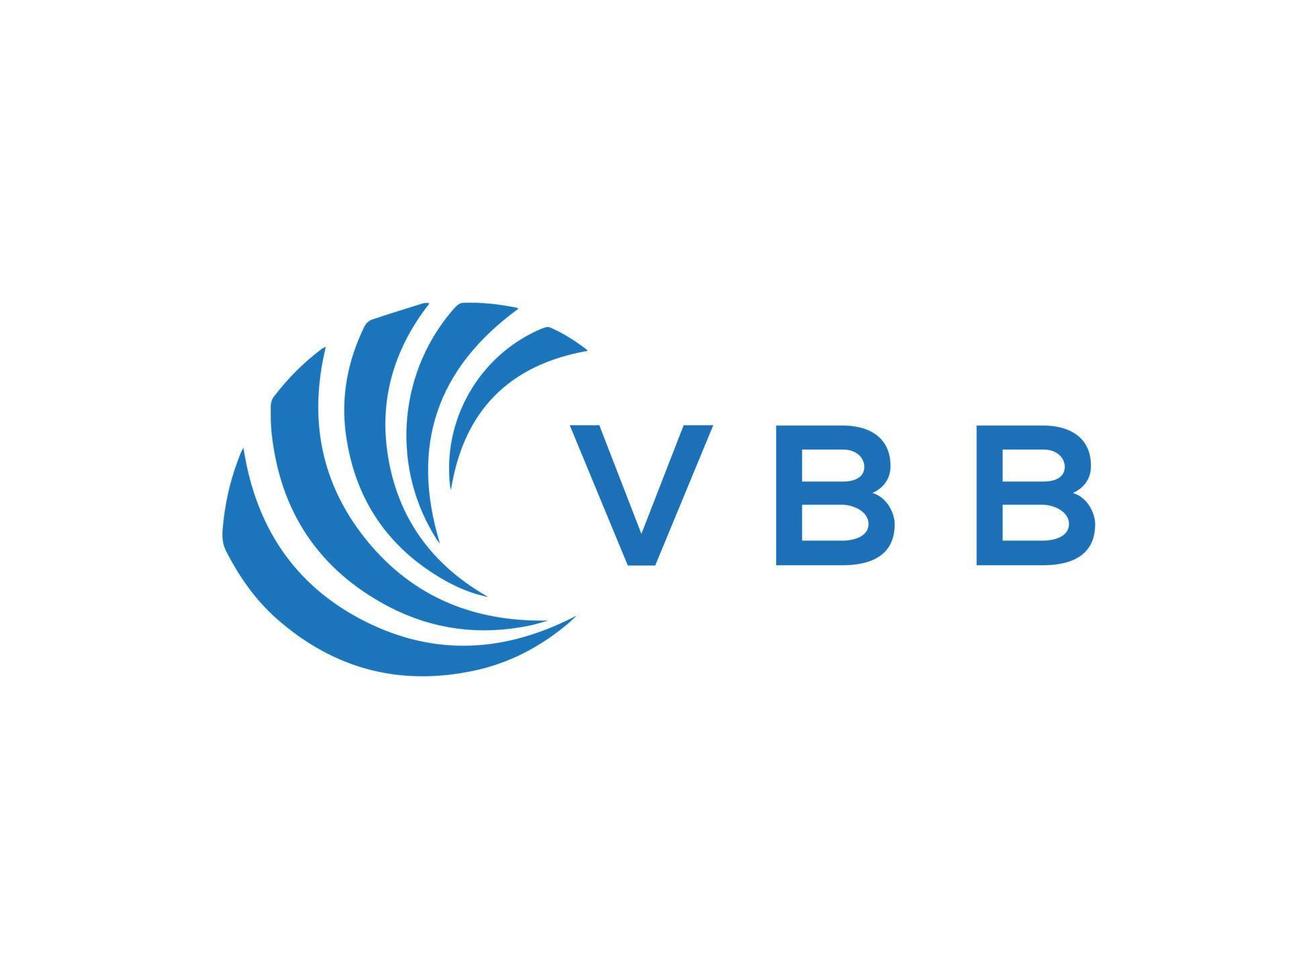 VBB letter logo design on white background. VBB creative circle letter logo concept. VBB letter design. vector